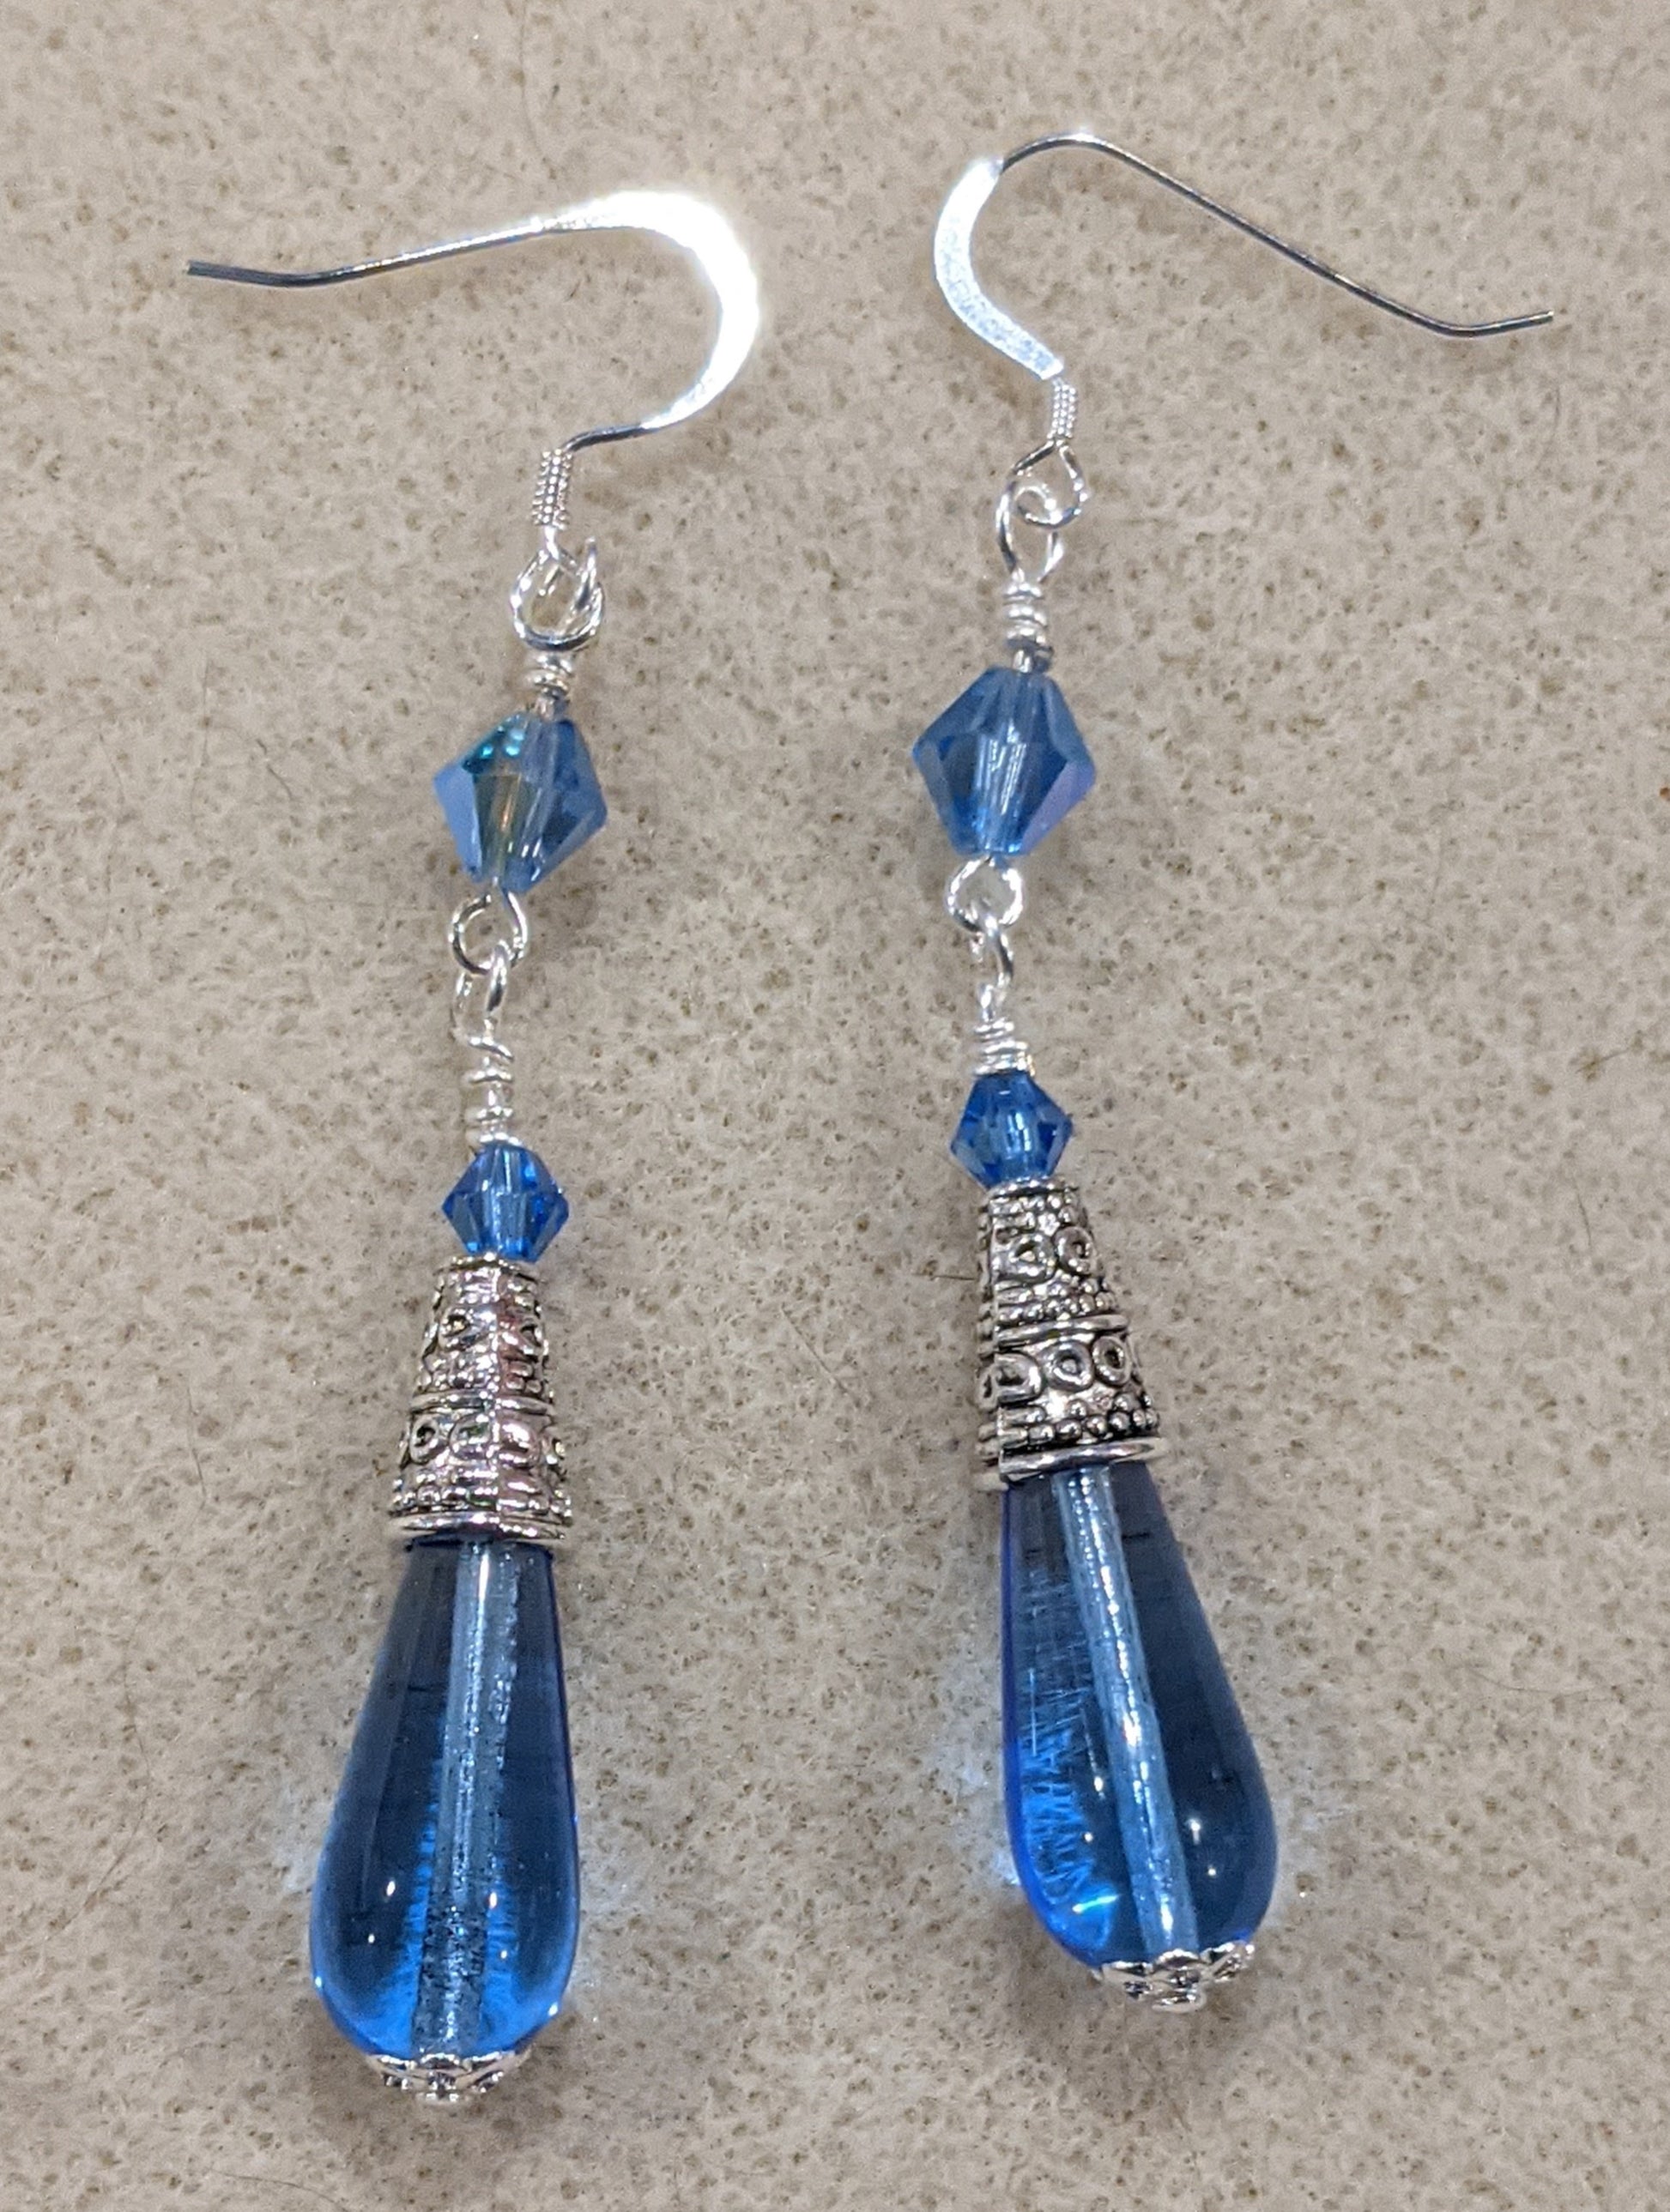 Czech Pressed Glass Dangle Earrings Beaded Earrings Dragon & Wolf Designs Sapphire blue  